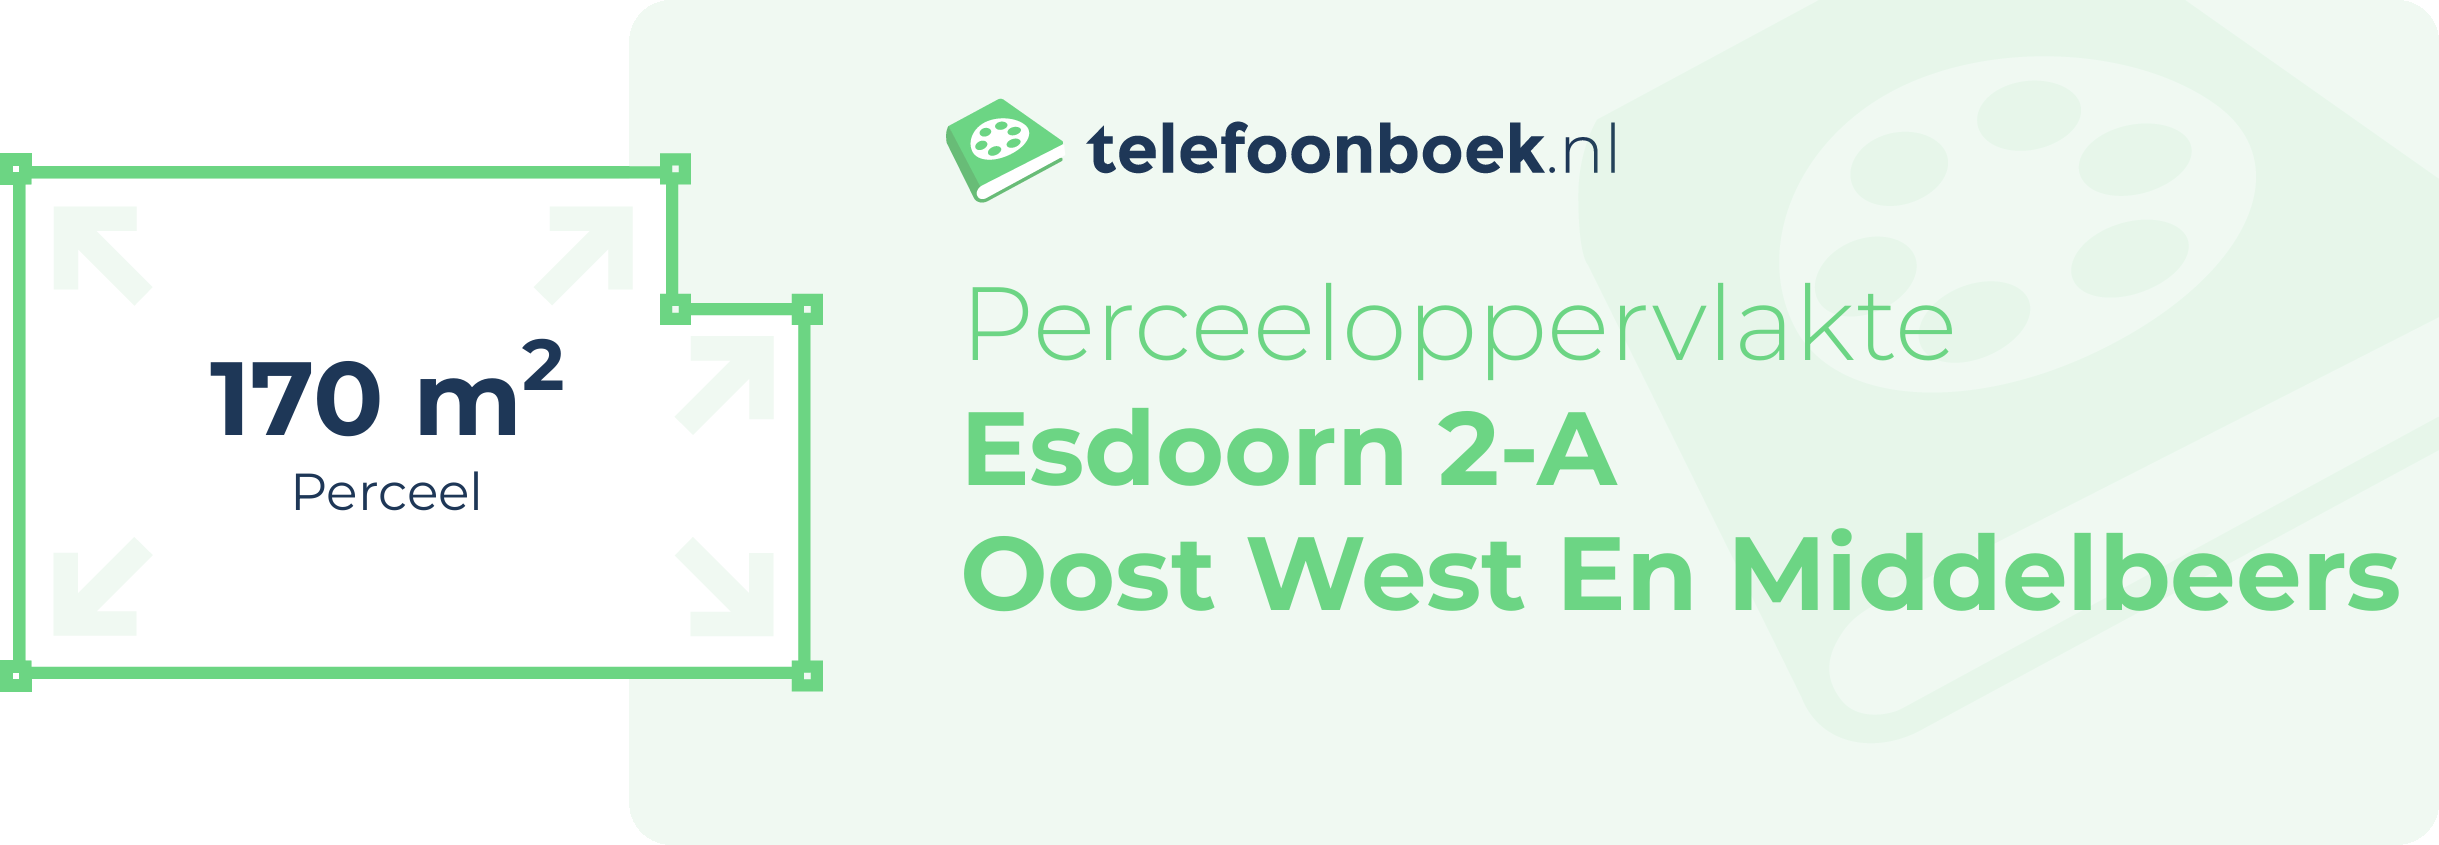 Perceeloppervlakte Esdoorn 2-A Oost West En Middelbeers